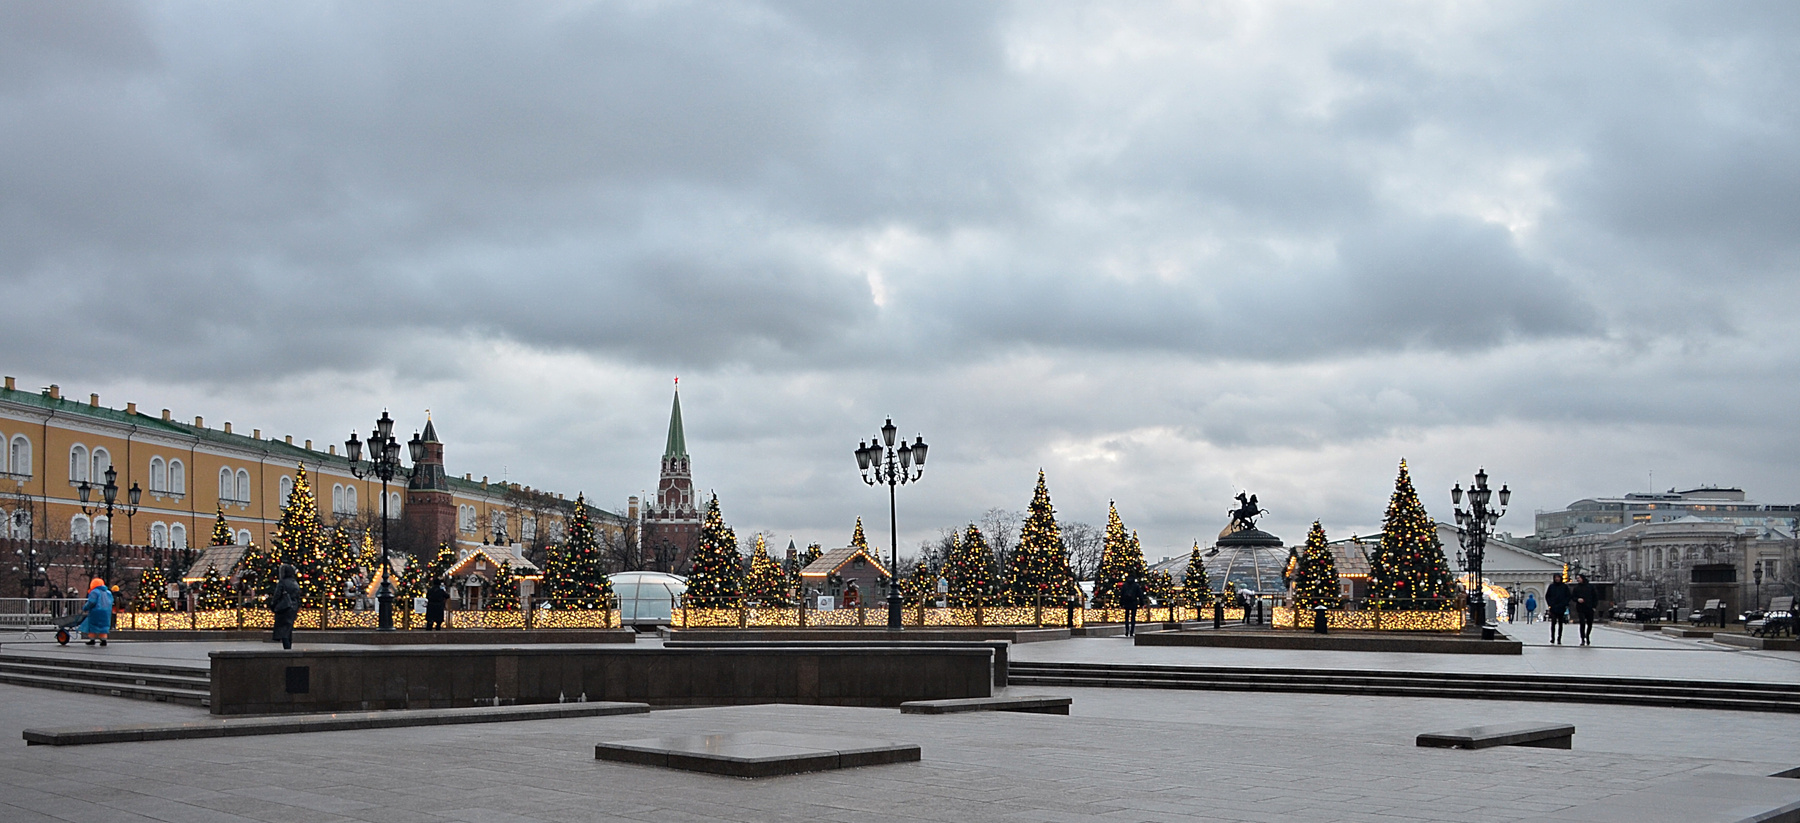 Манежная площадь. Москва зима рождество город сумерки небо облака елки кремль